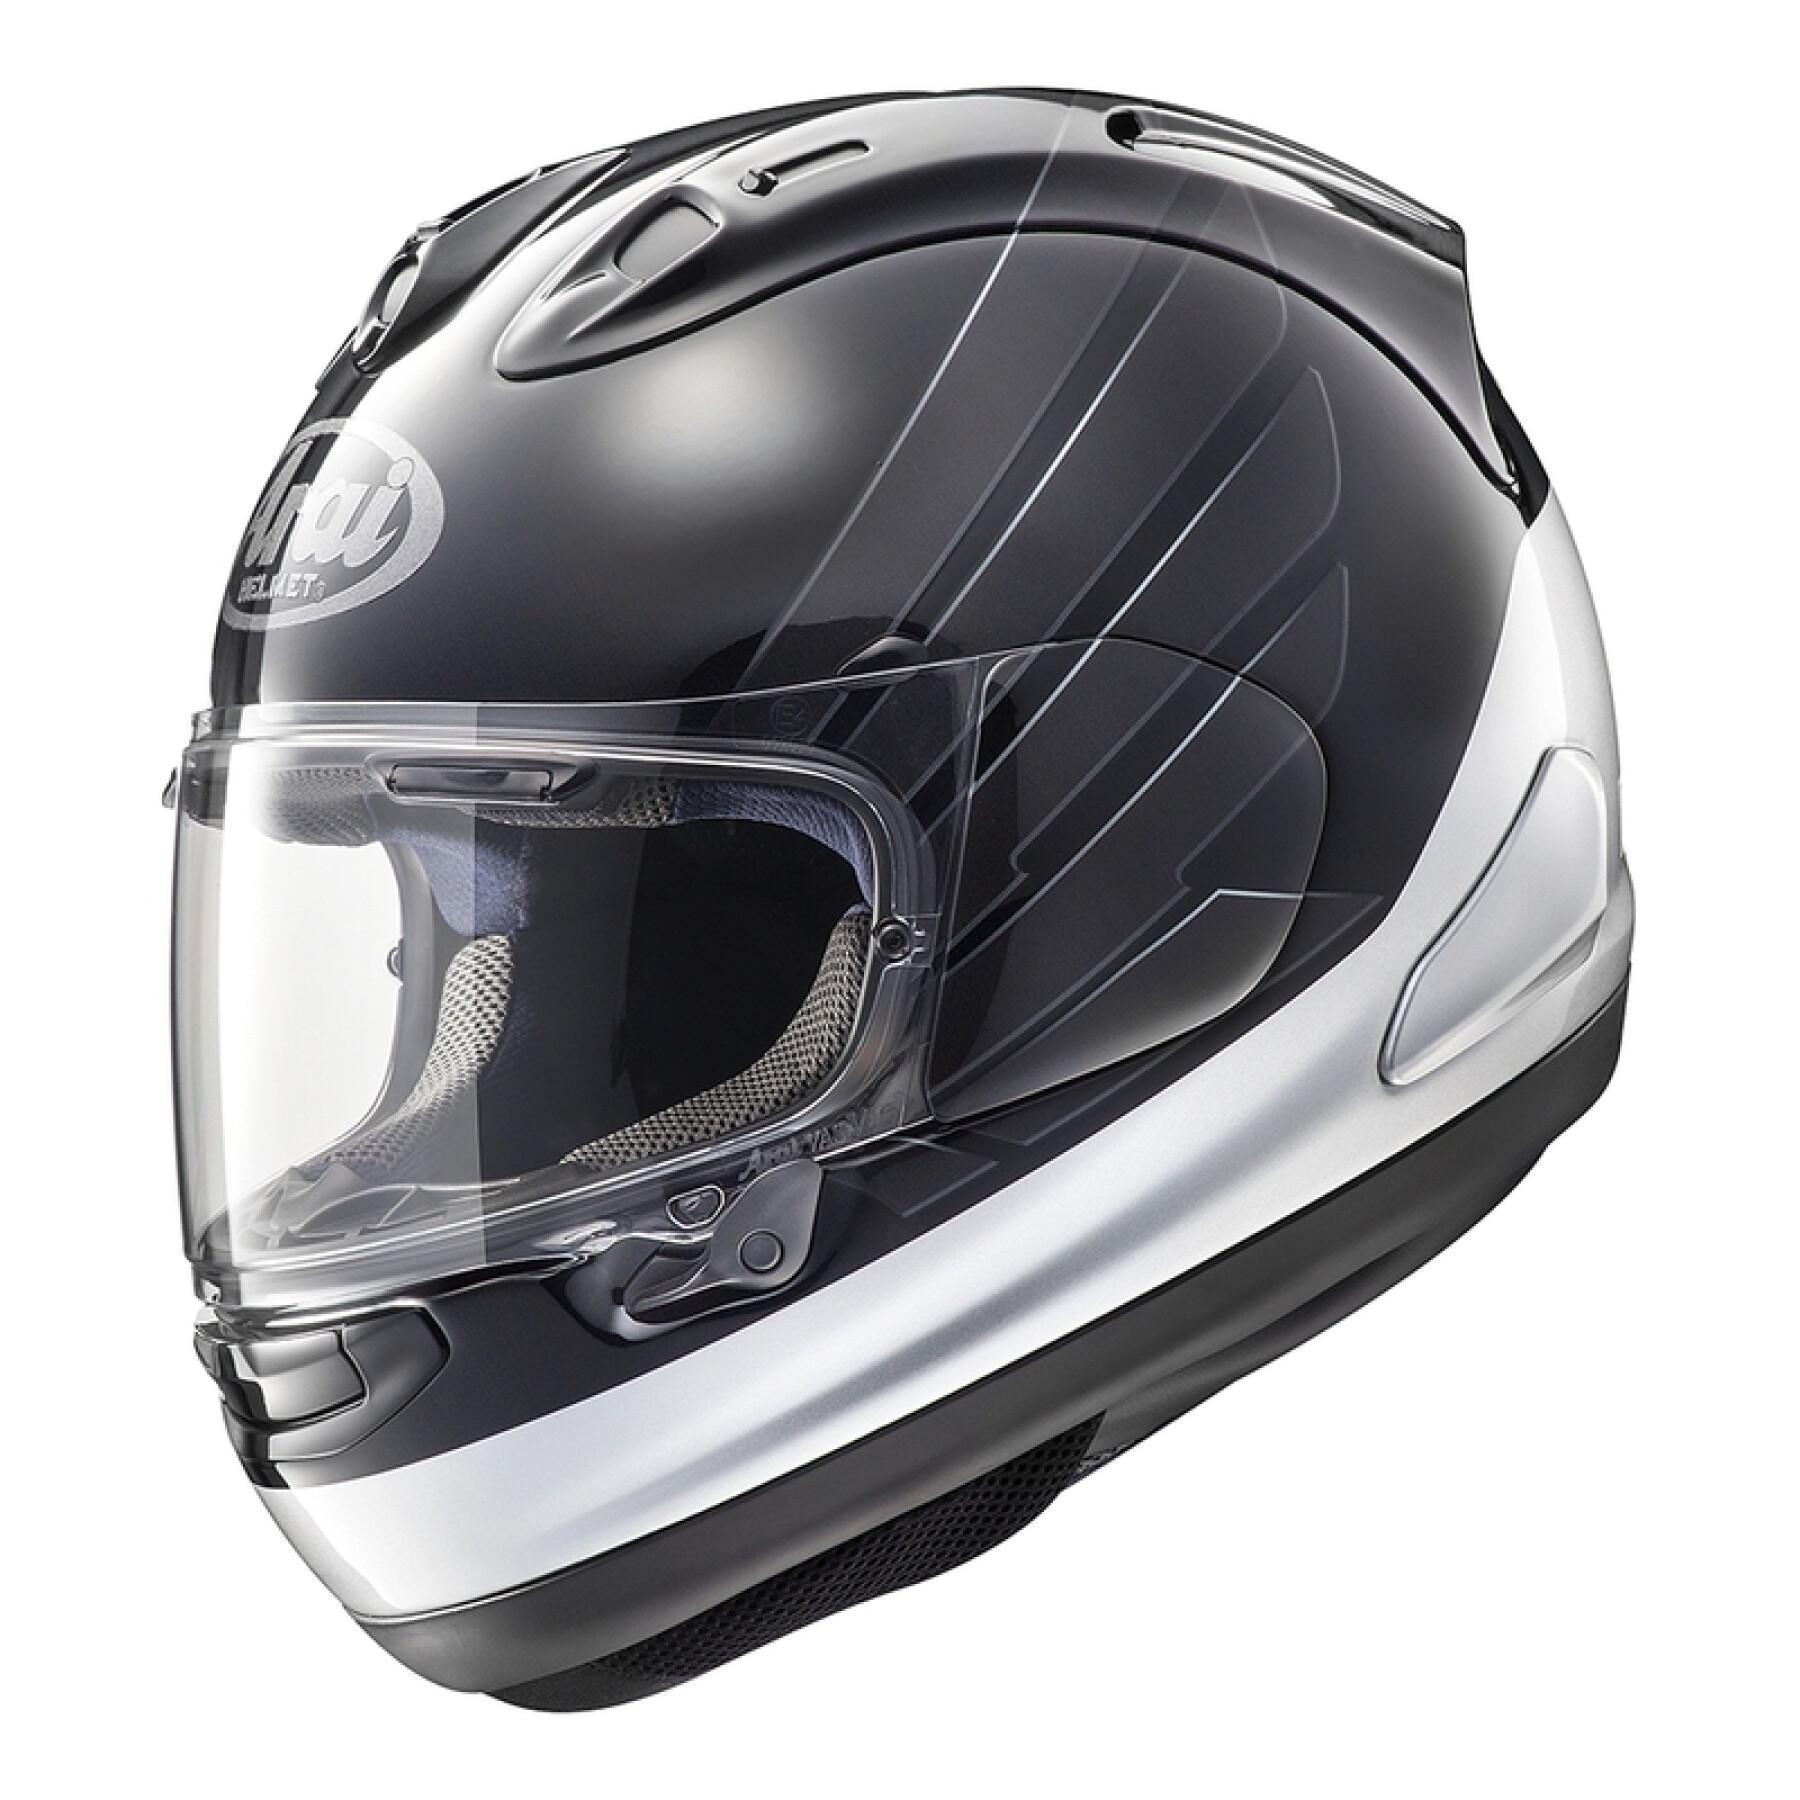 Full face motorcycle helmet Arai RX-7V Honda CB